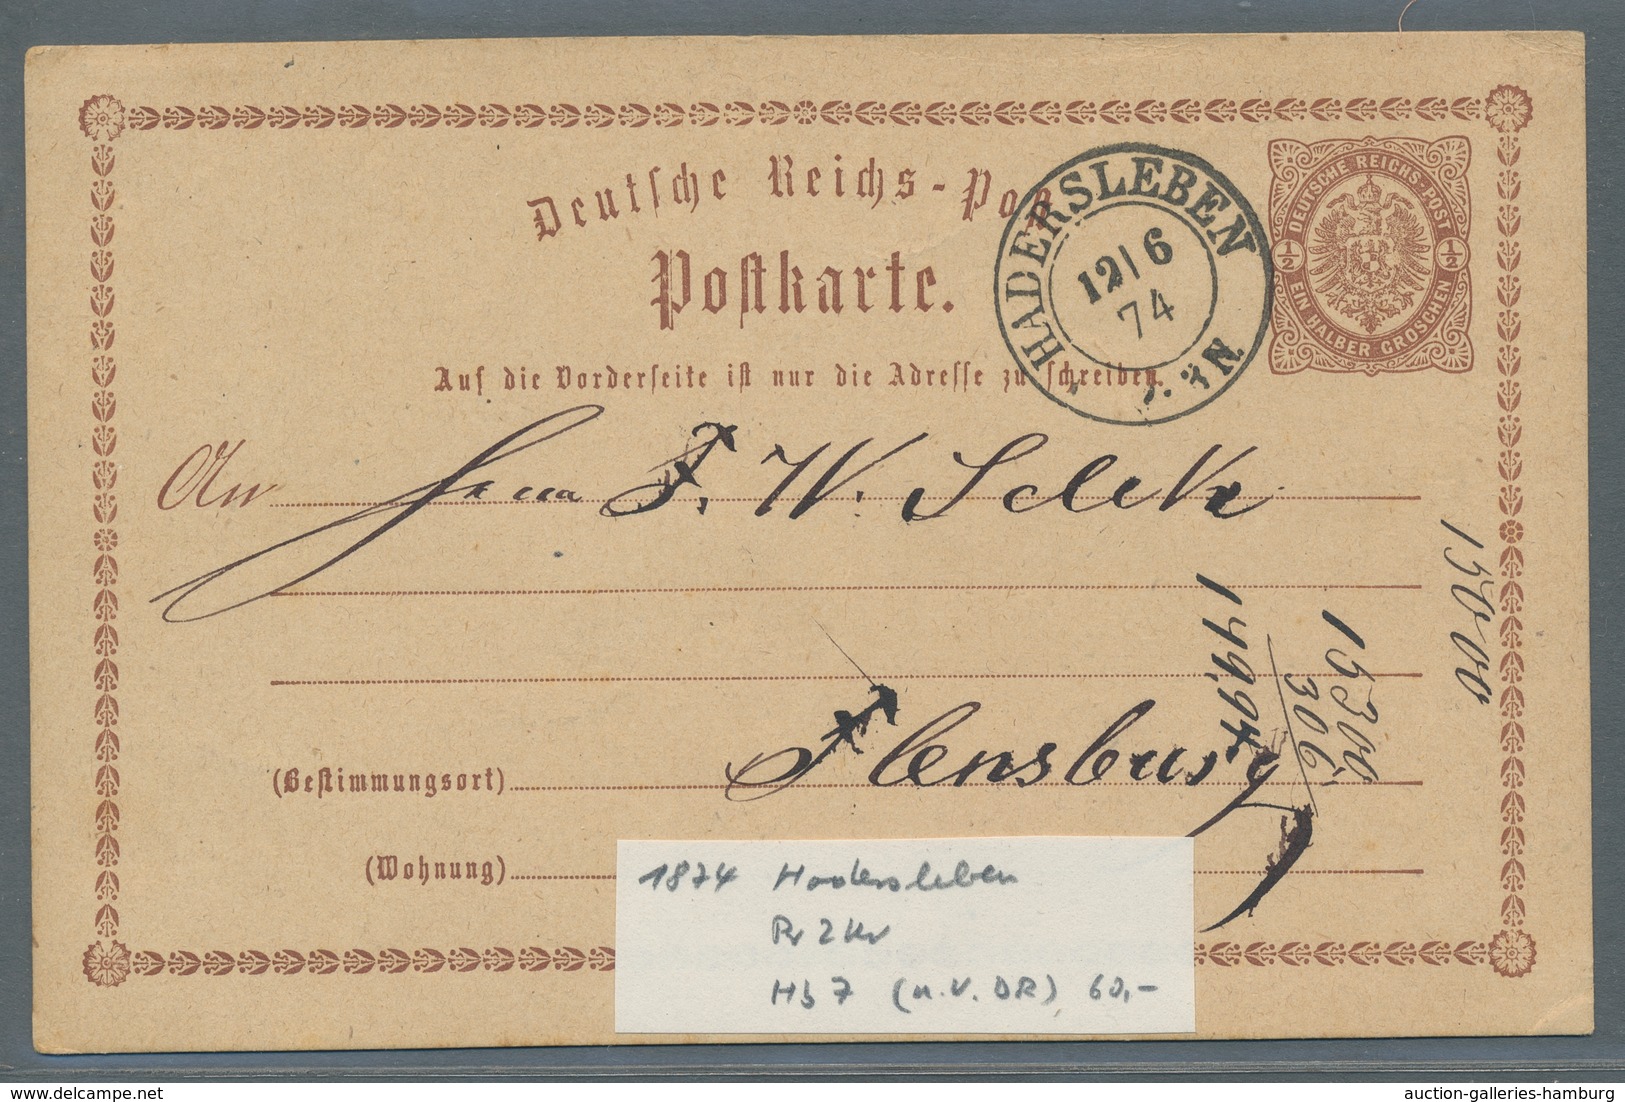 Schleswig-Holstein - Ortsstempel: HADERSLEBEN 1846-74, Zusammenstellung von acht Belegen in meist gu